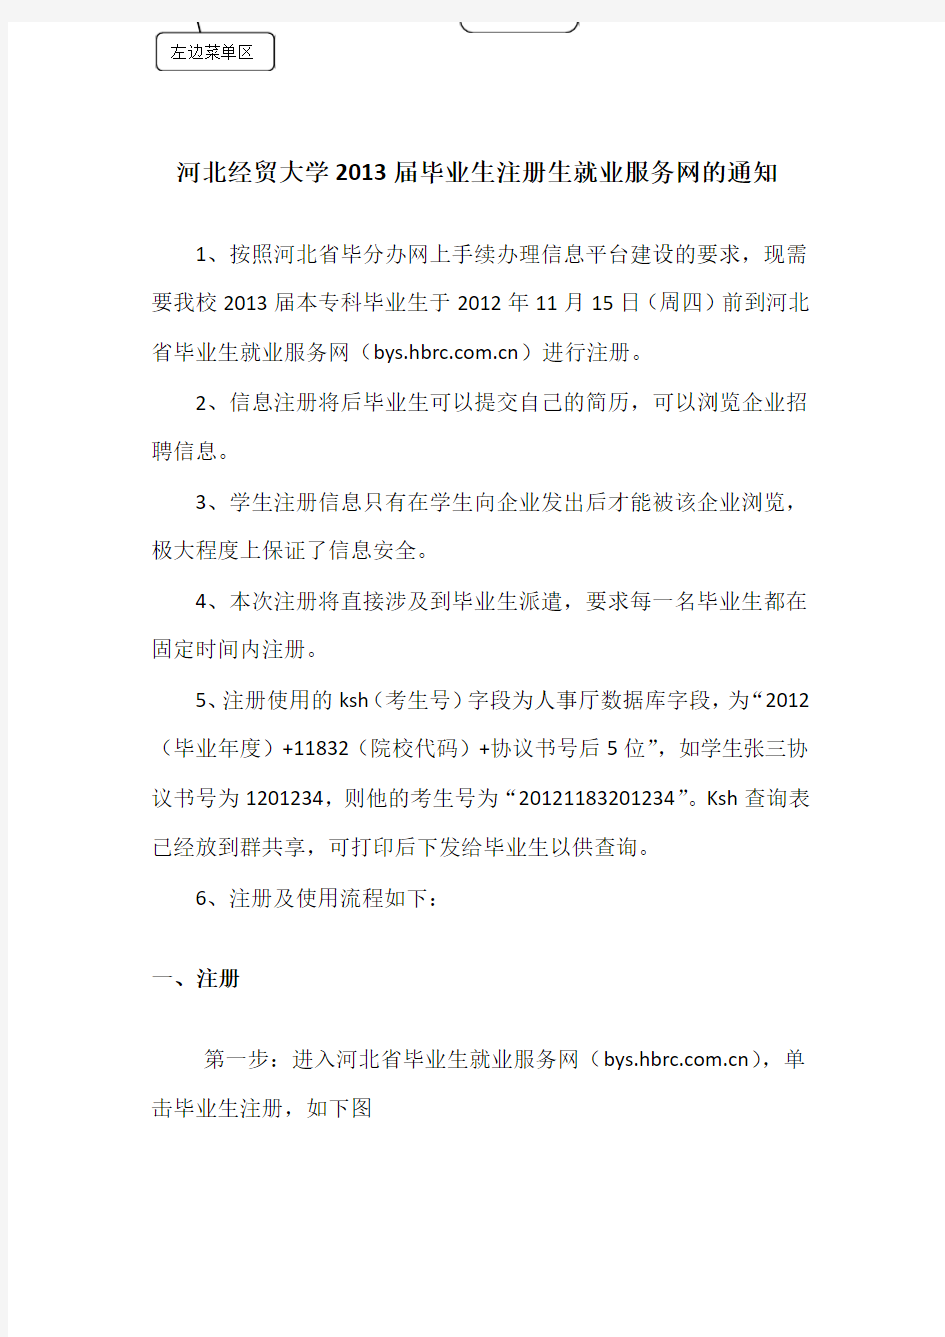 河北省毕业生就业服务平台使用说明书(毕业生部分)